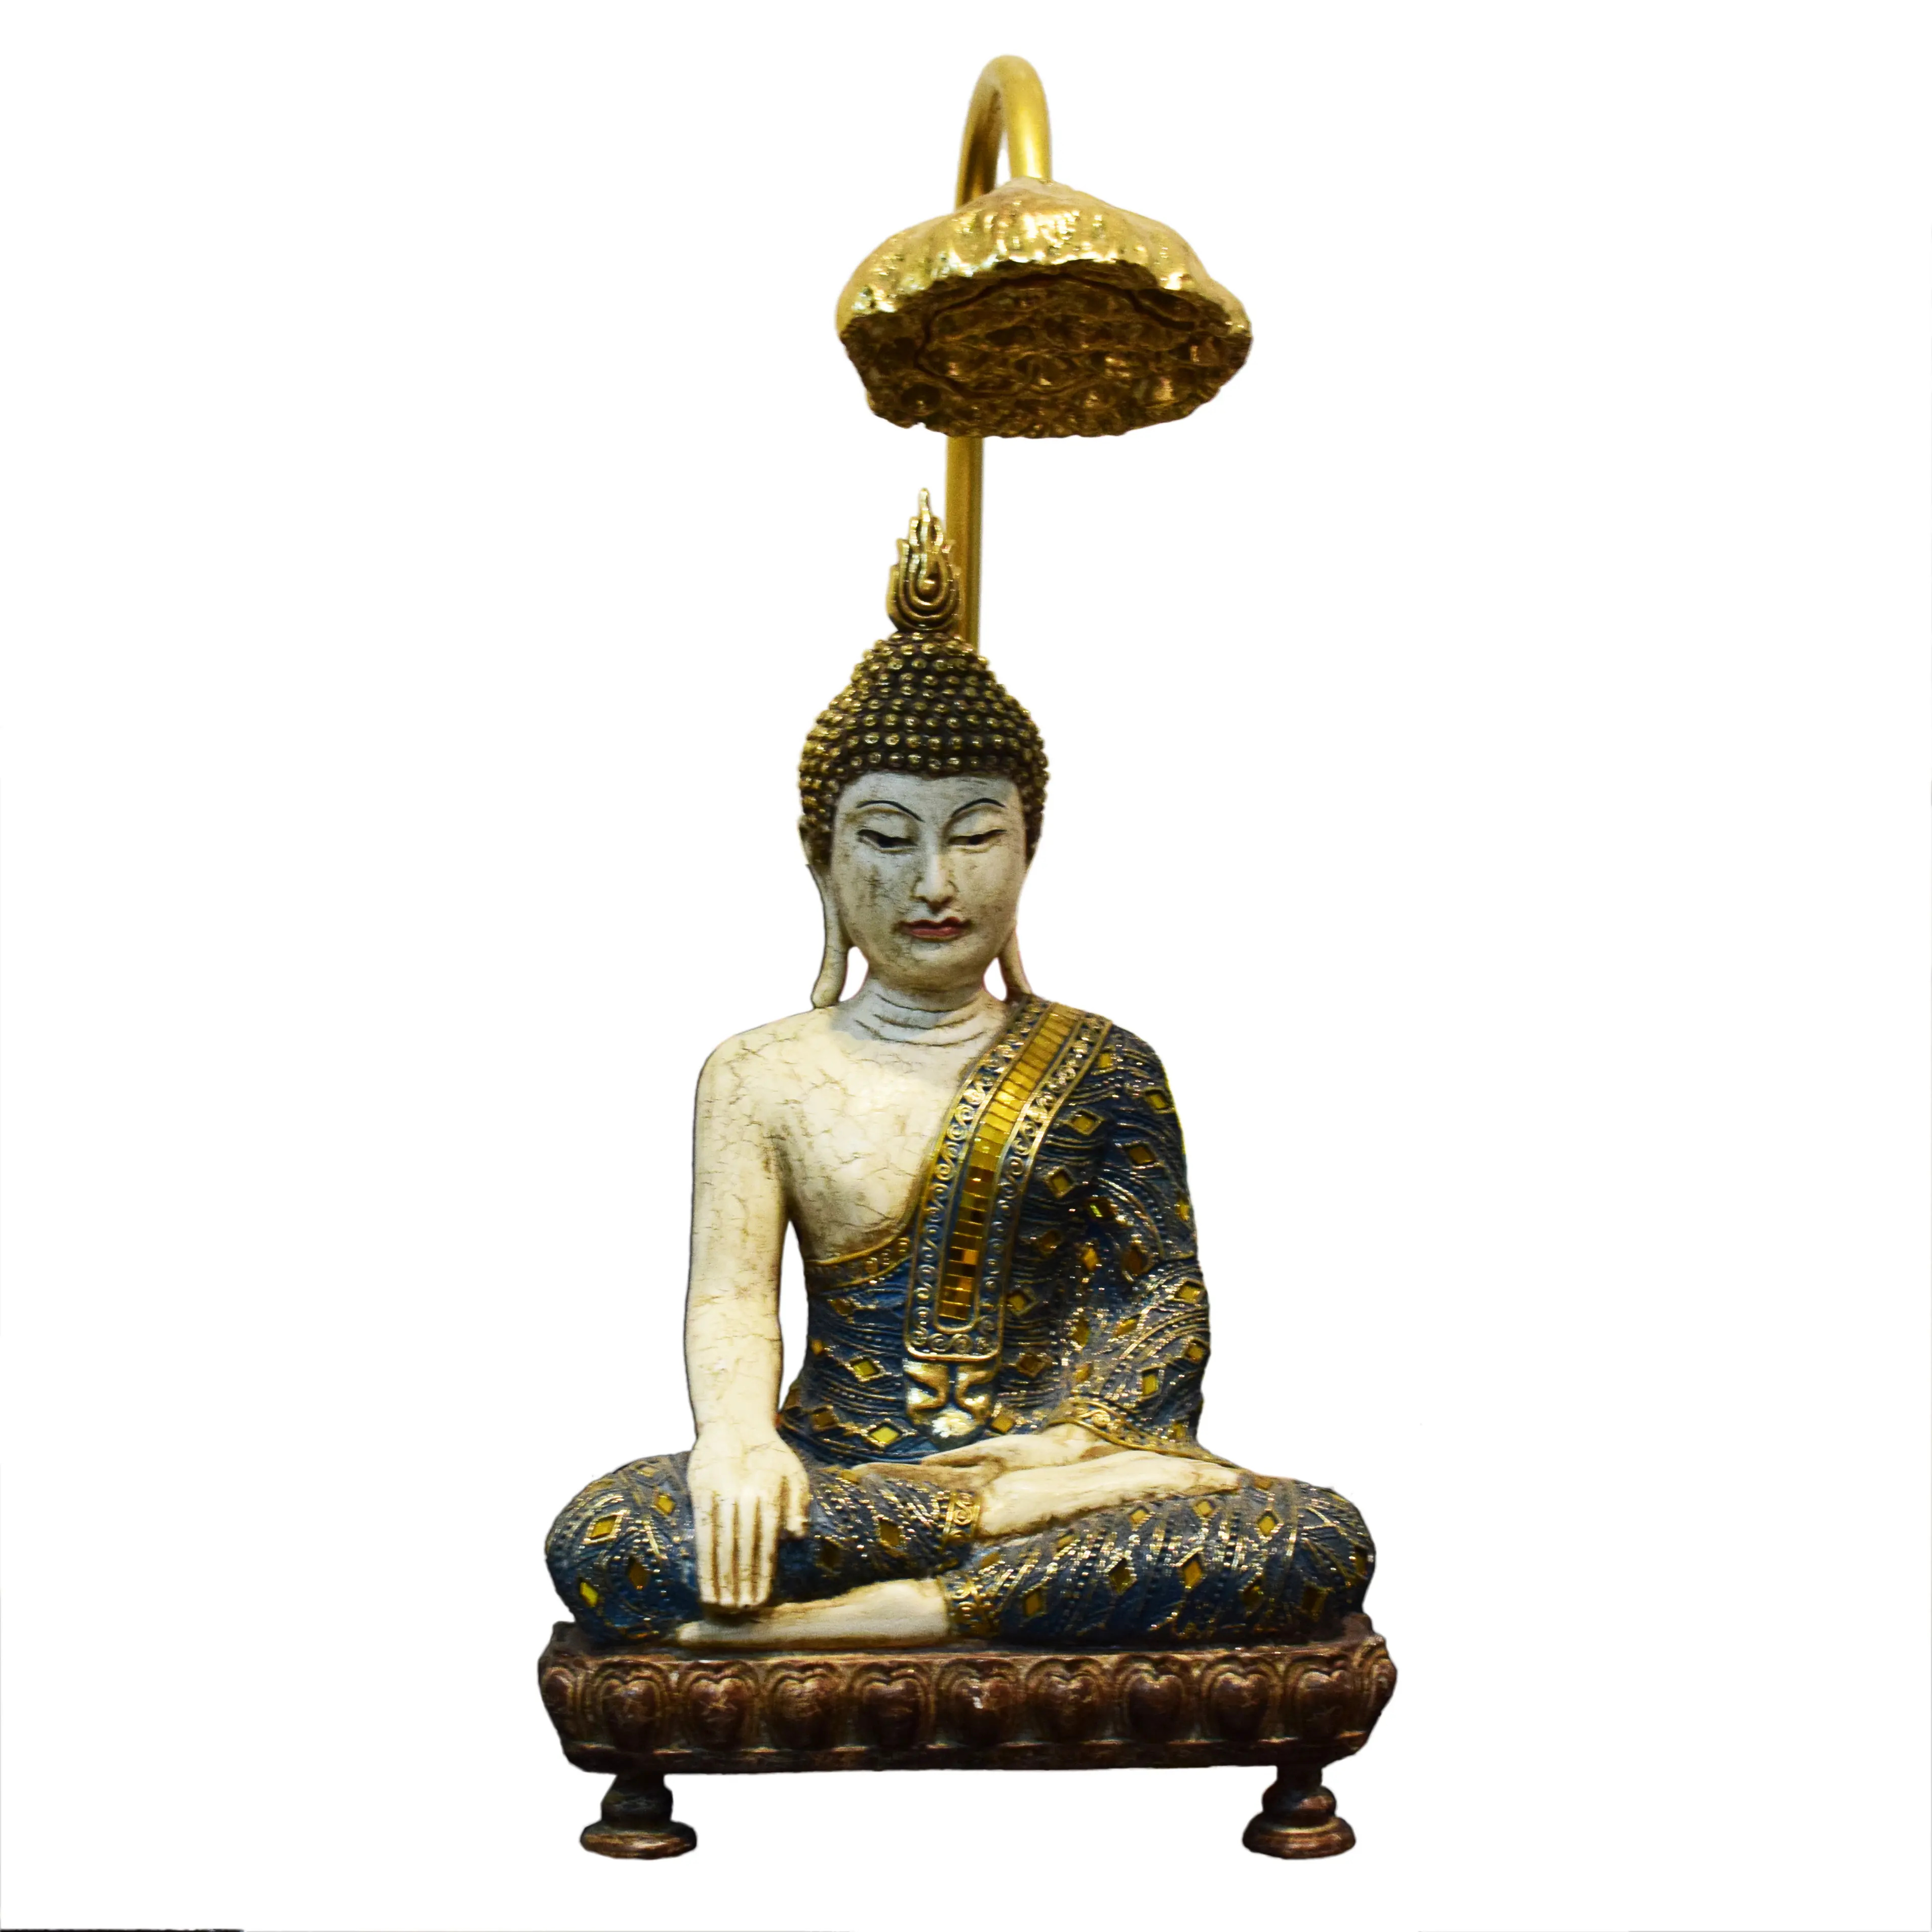 Hindu und Osten Asiatischen Dekor Religiöse Handwerk Sitzen Buddha figur statue mit lotus lampe